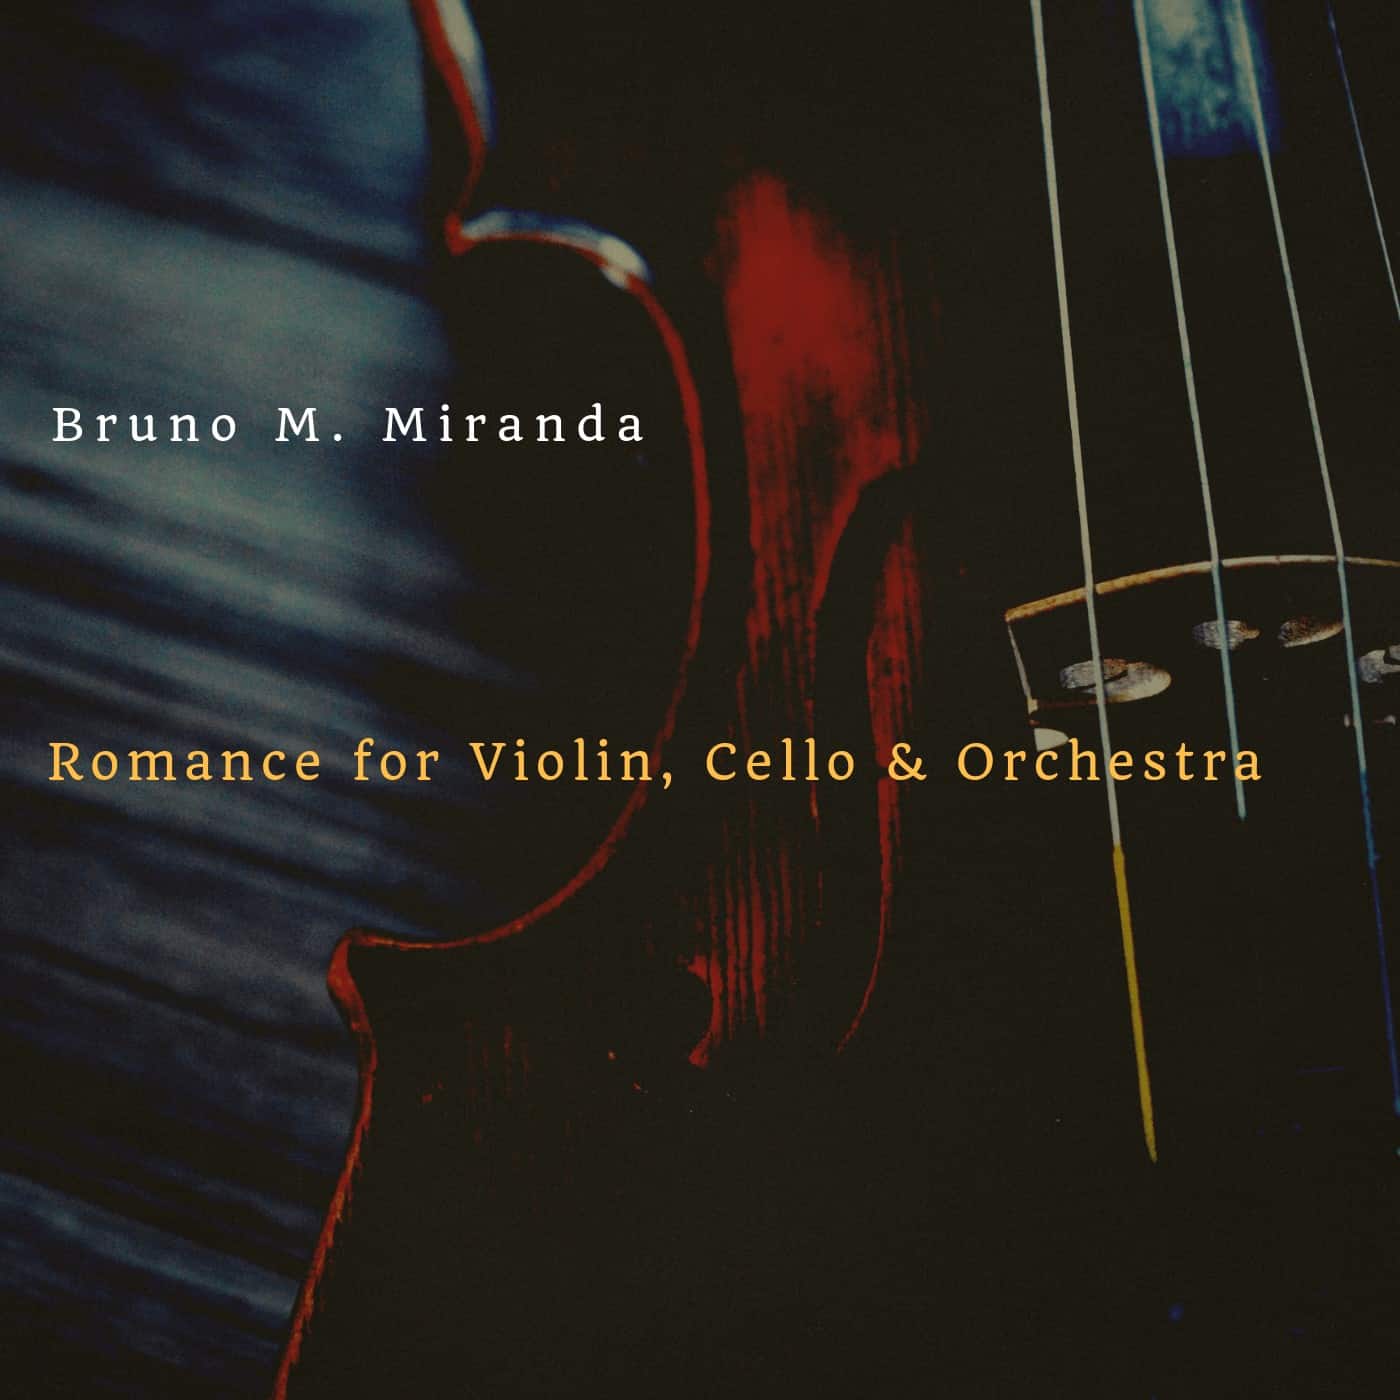 Romance for Violin Cello Orchestra